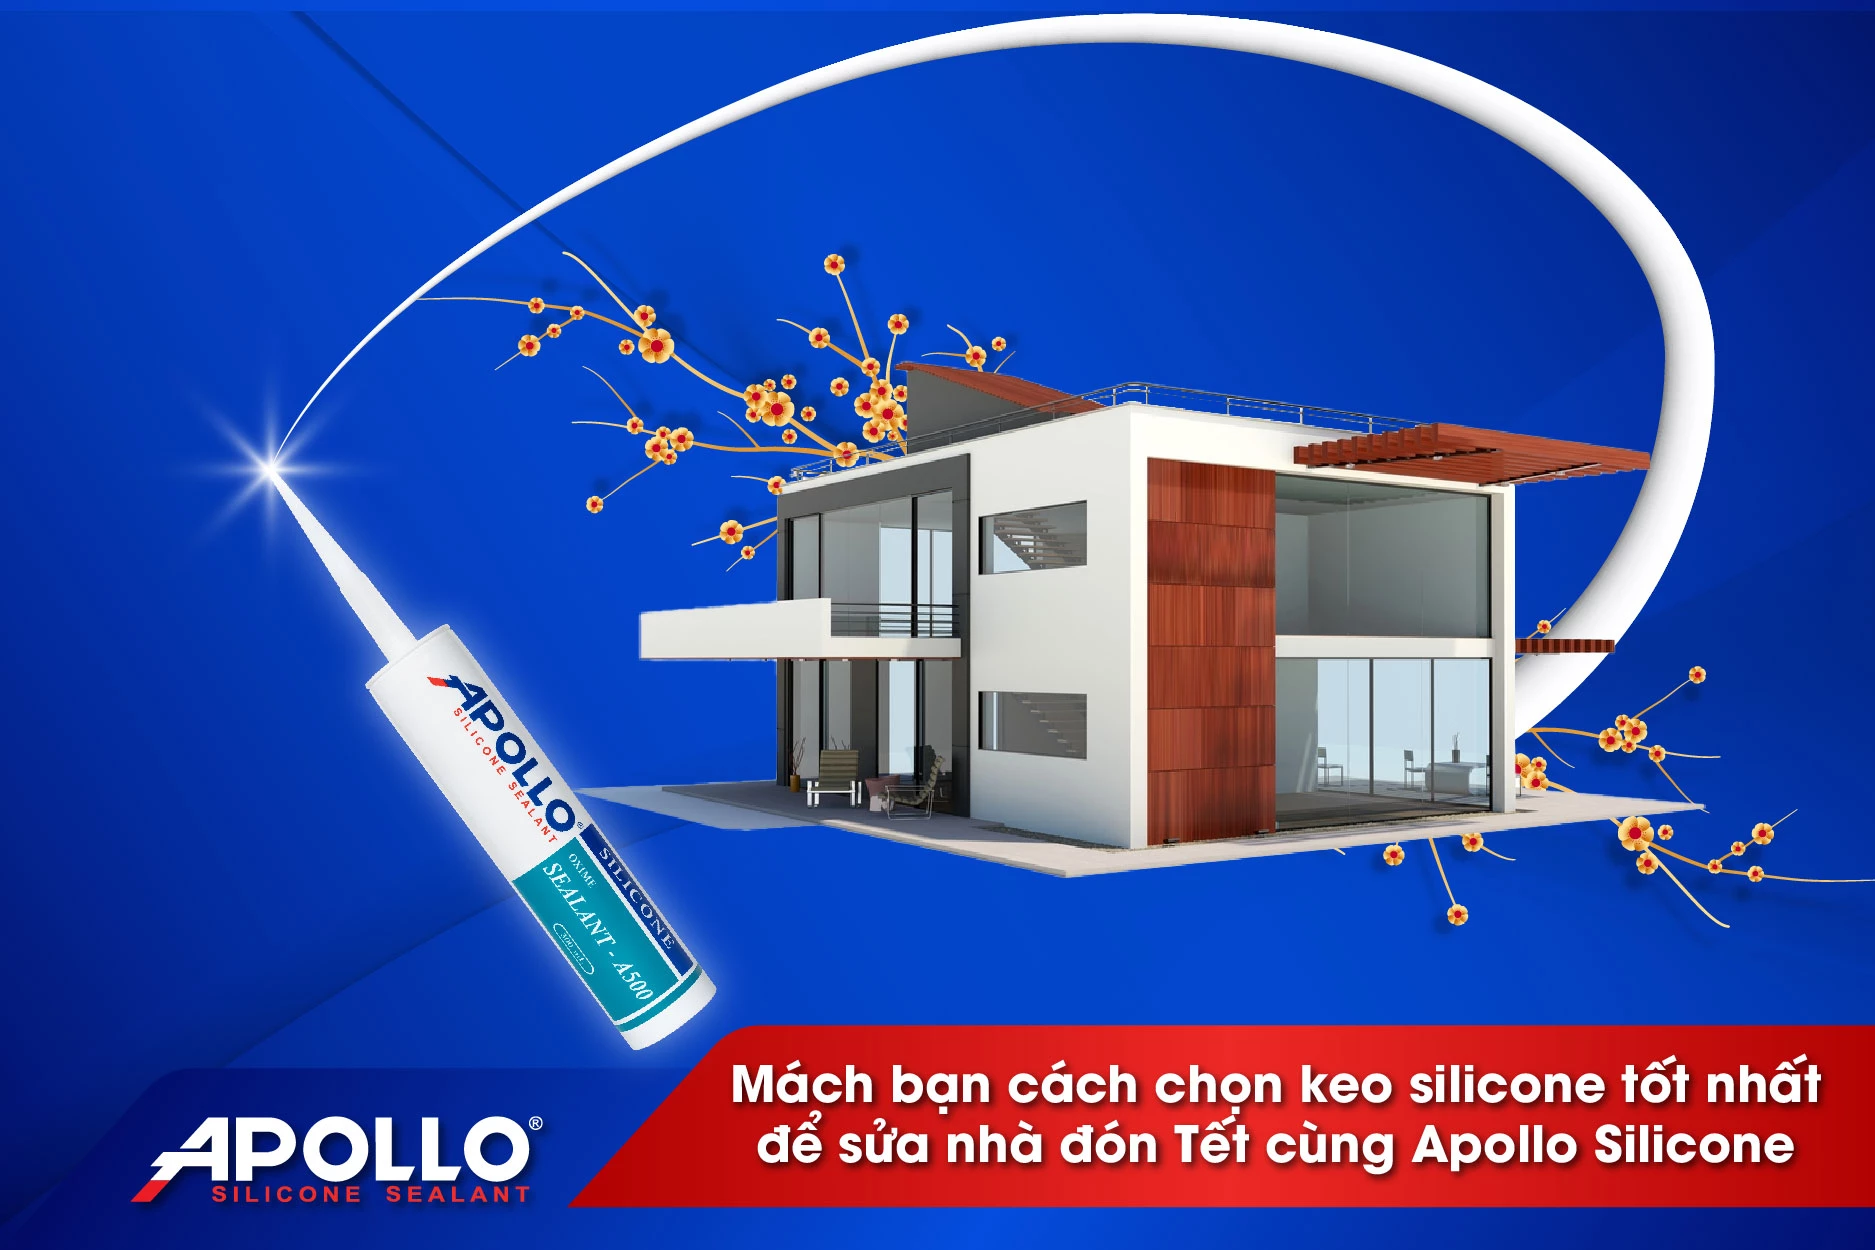 Mách bạn cách chọn keo silicone tốt nhất để sửa nhà đón Tết cùng Apollo Silicone